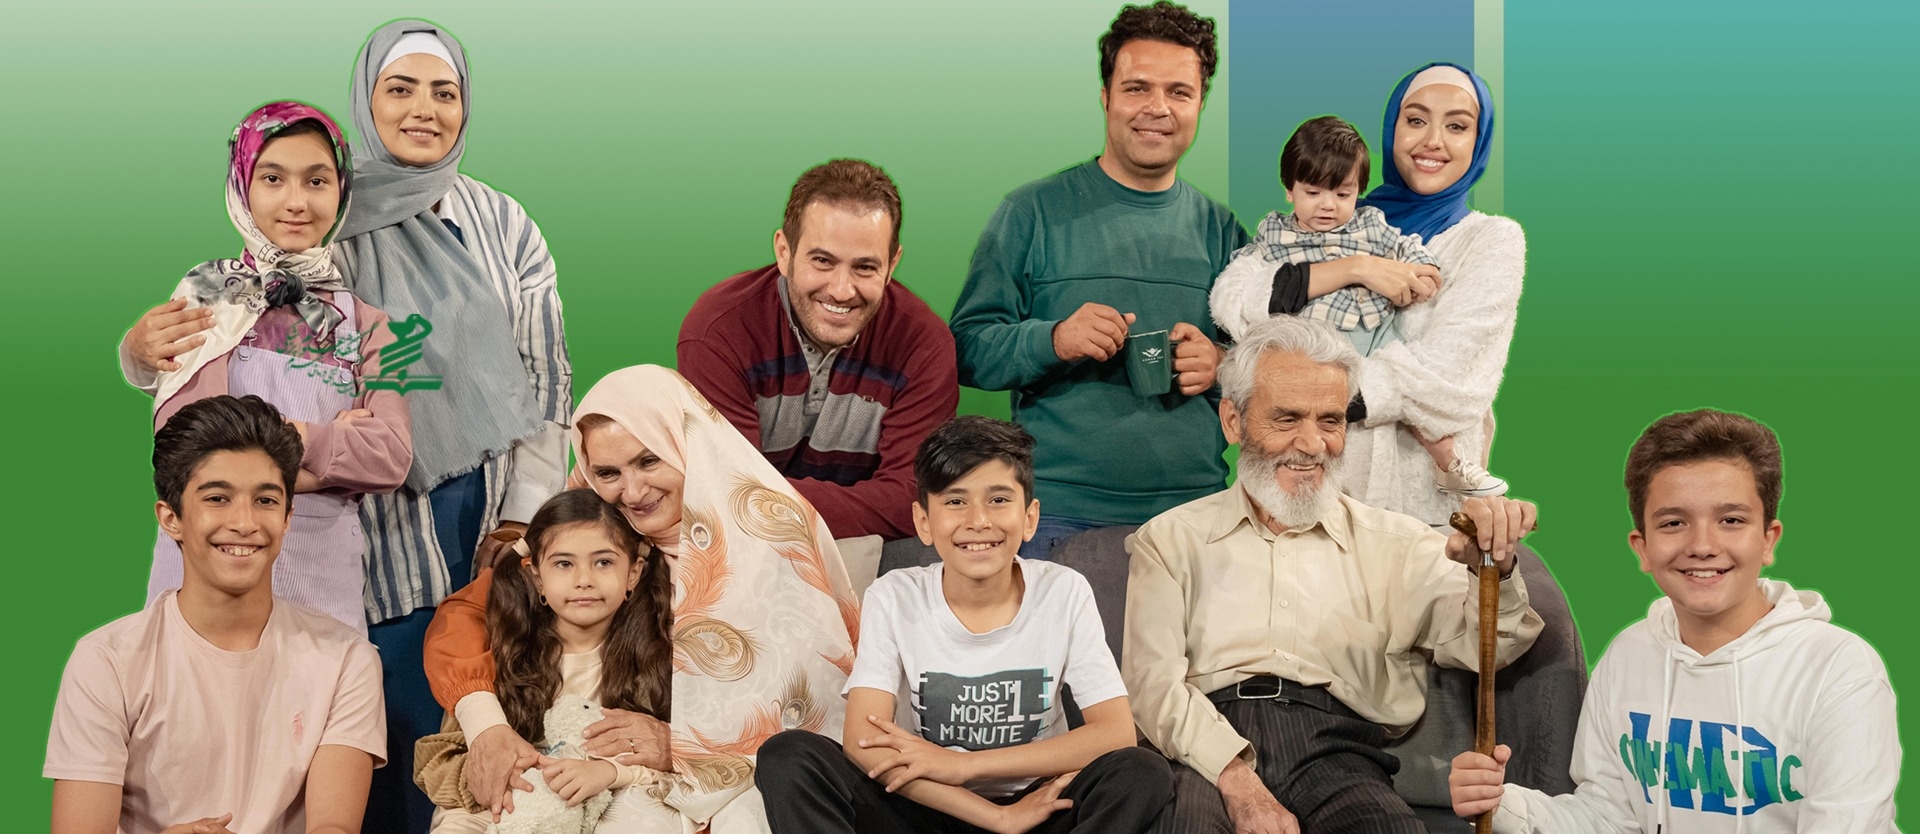 نقش من در جوانی ایران؛ فرزندان، نشاط امروز آسایش فردا/ هفته جمعیت گرامی باد